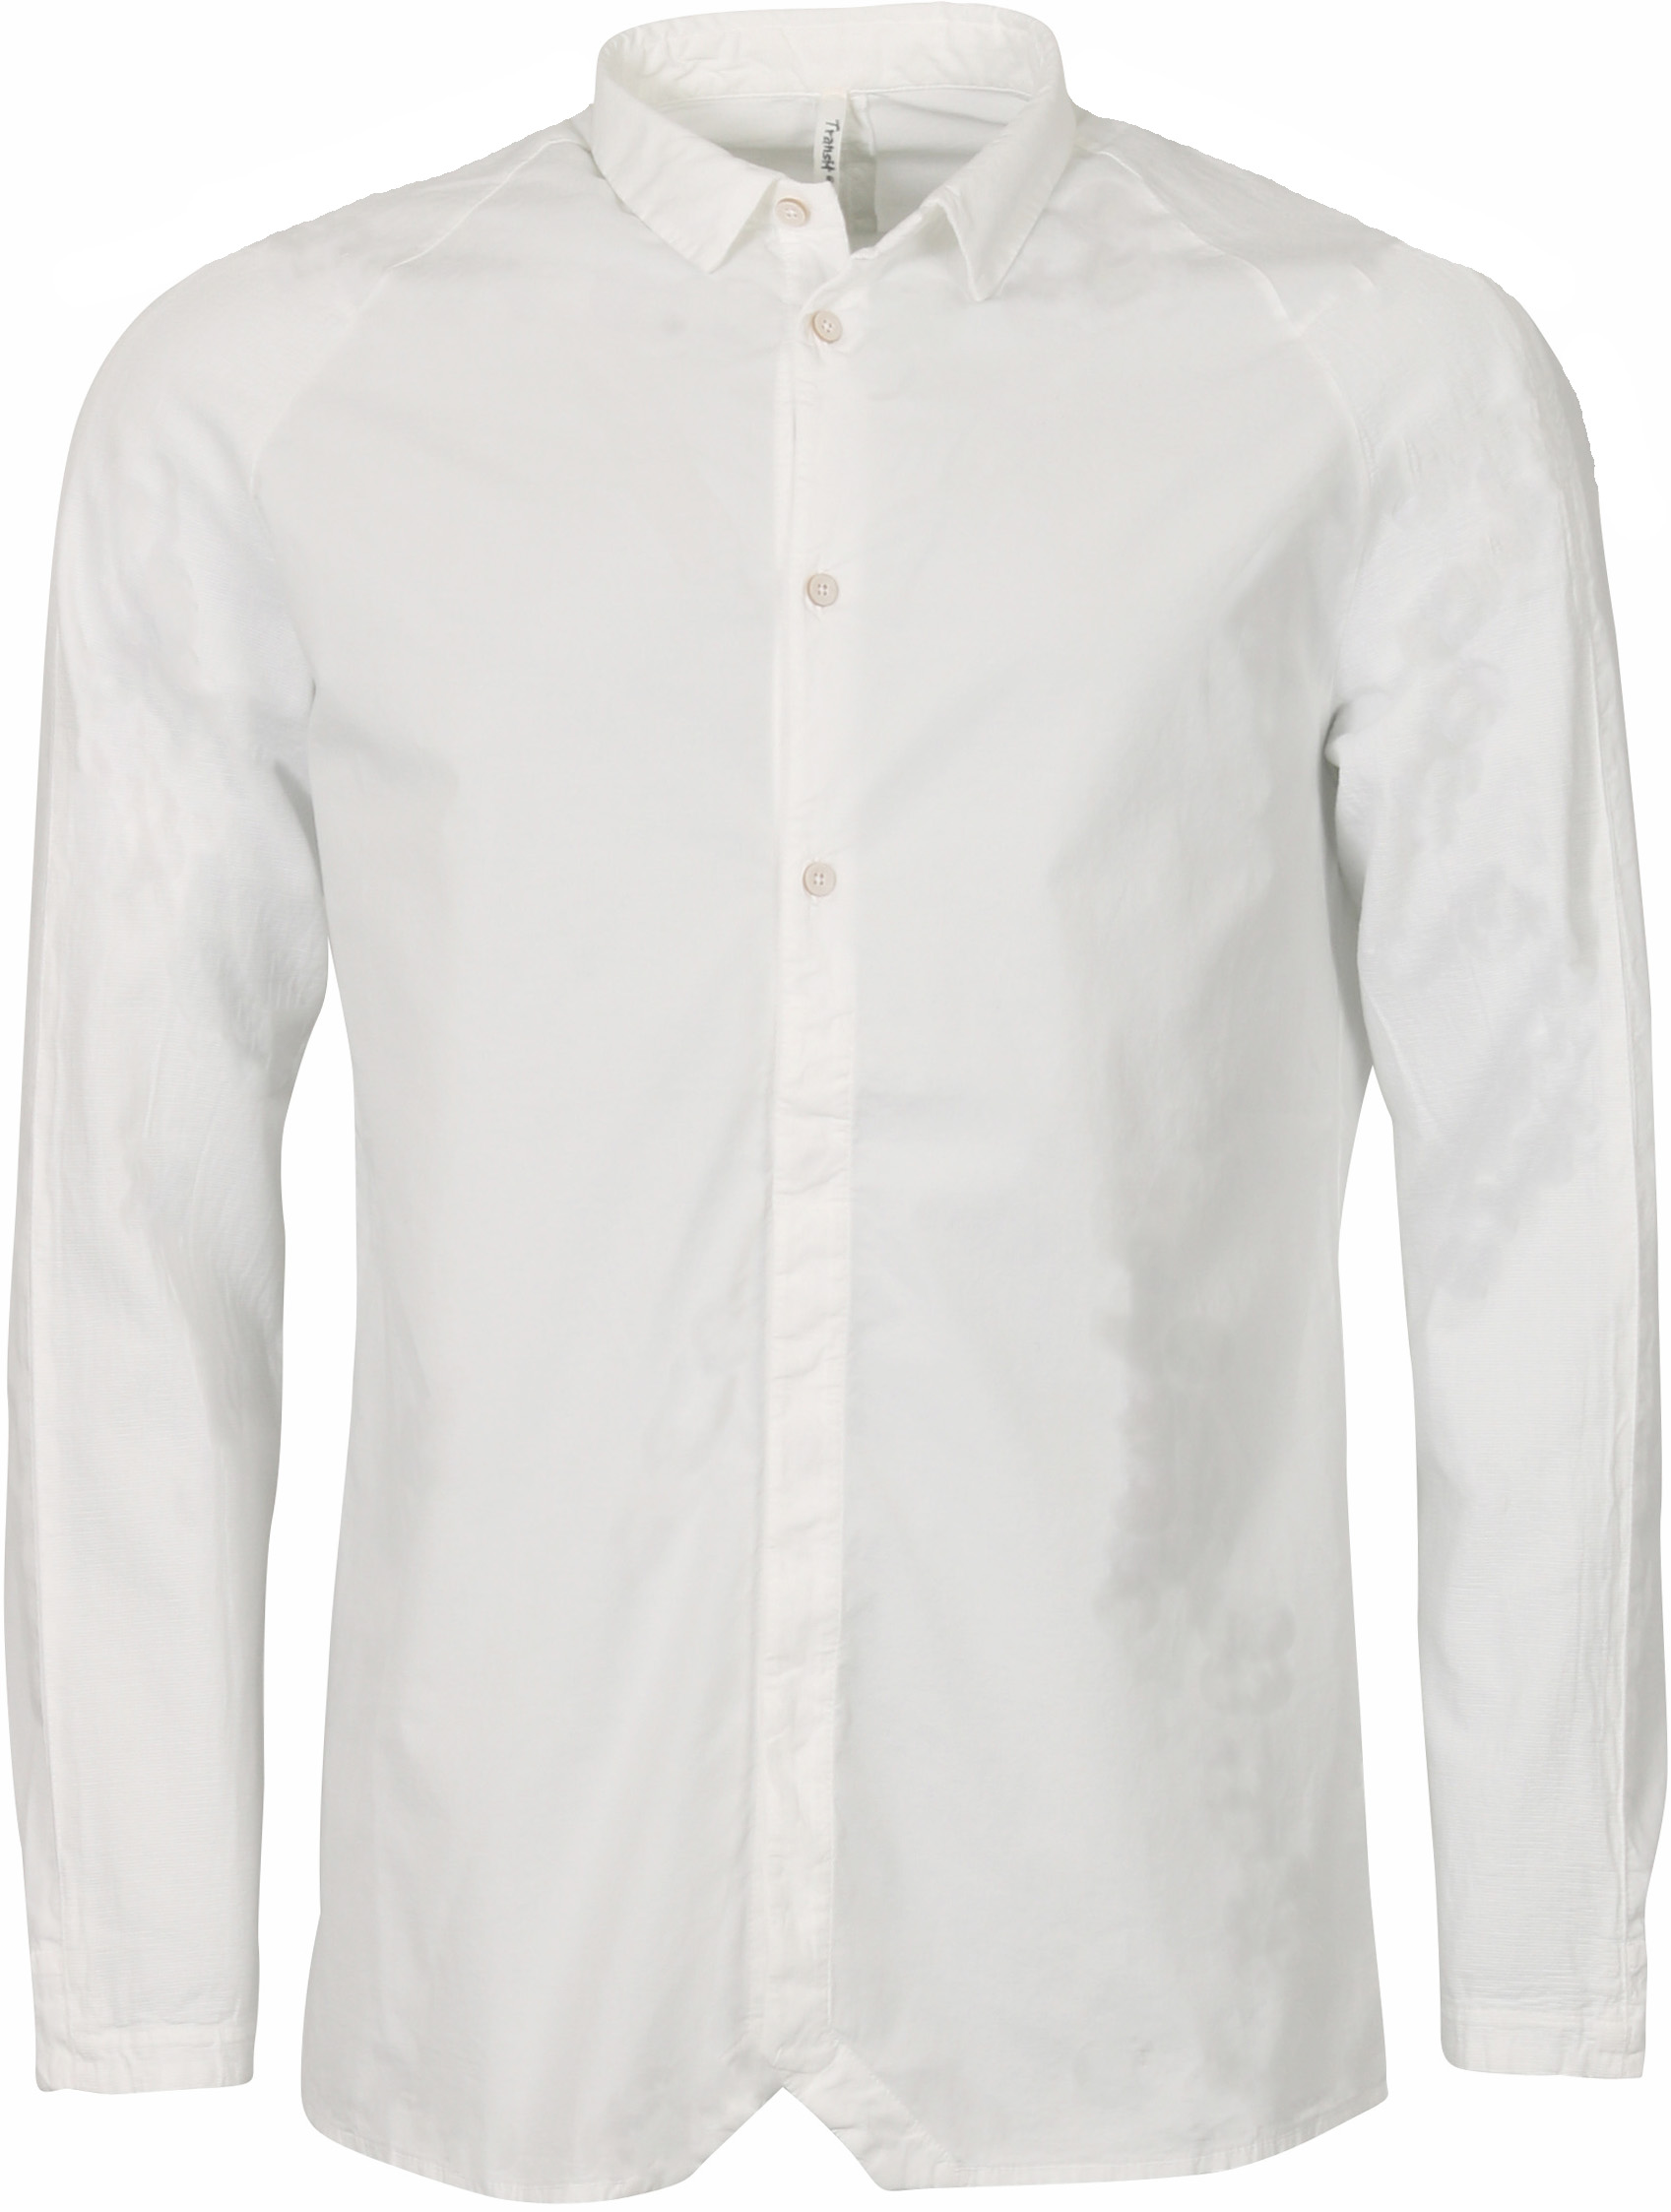 Transit Uomo Shirt White